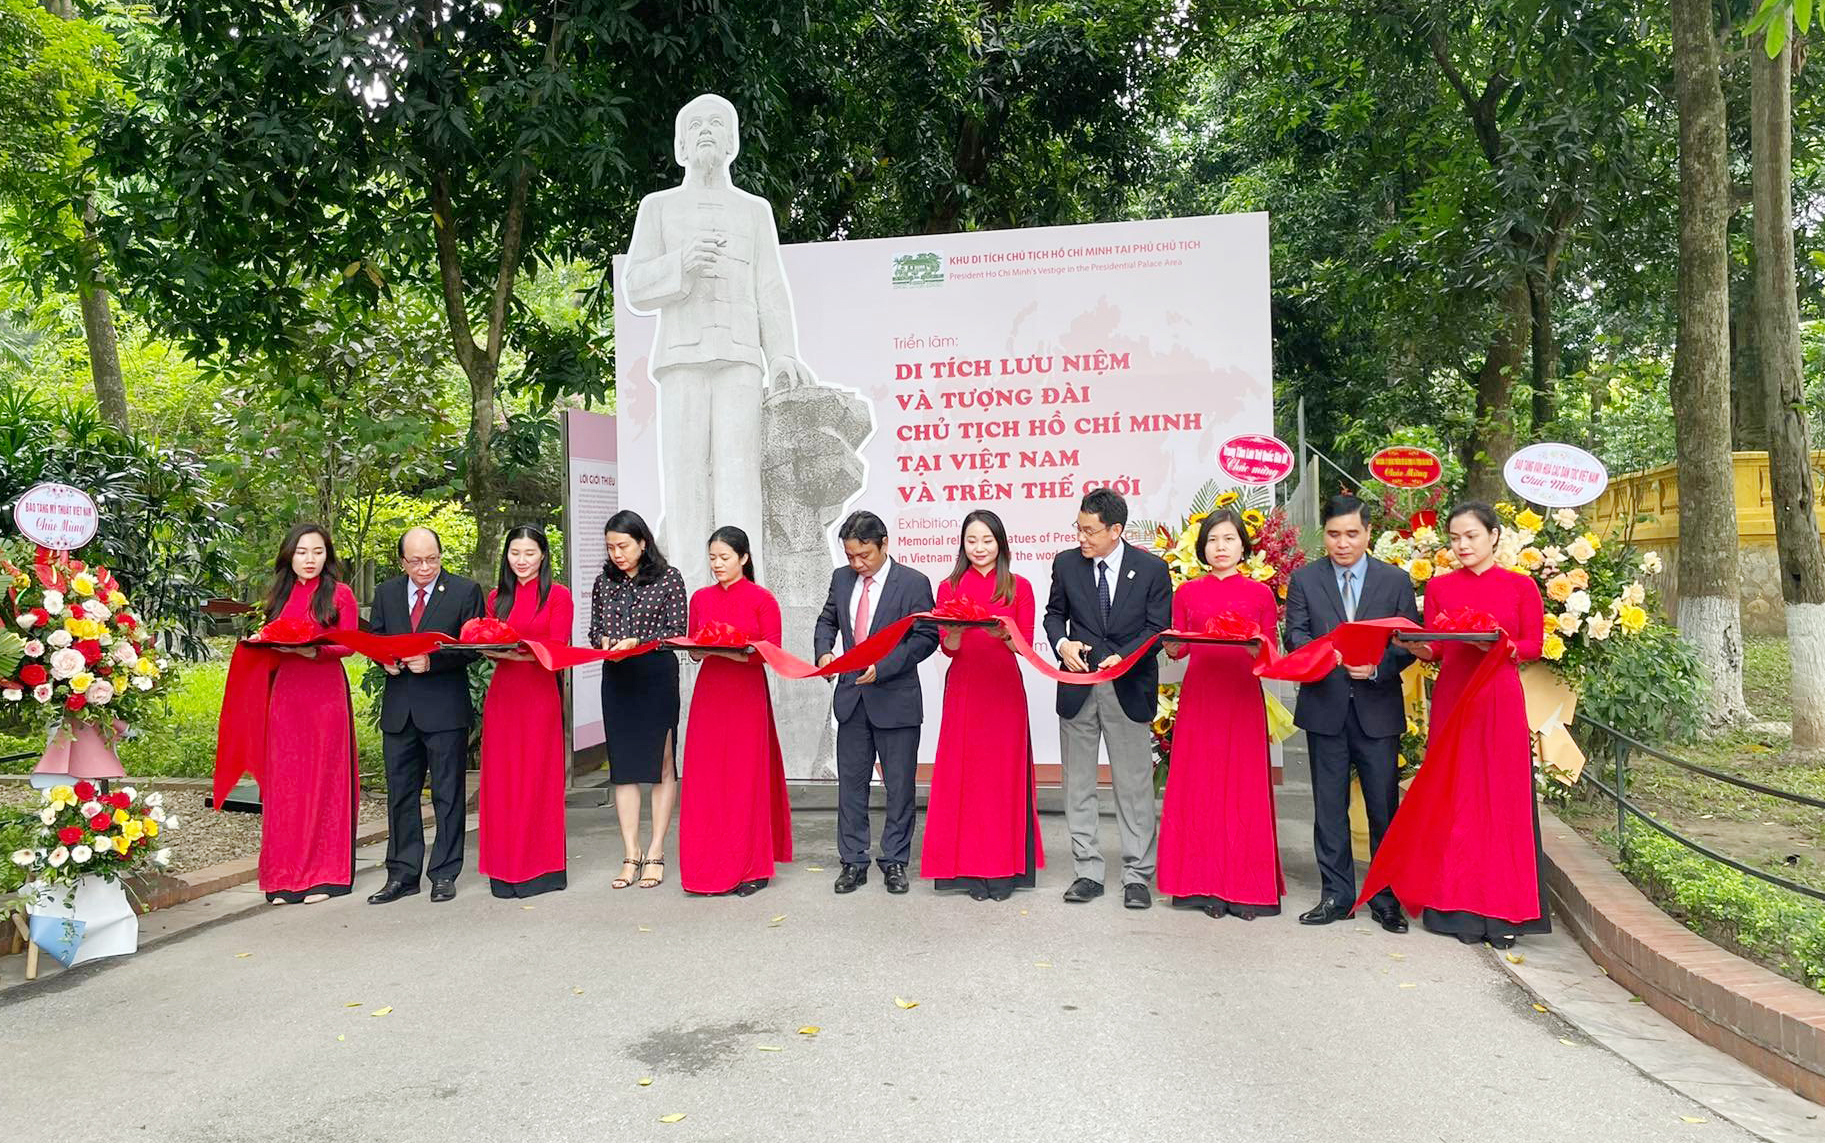 Triển lãm “Di tích lưu niệm và tượng đài Chủ tịch Hồ Chí Minh tại Việt Nam và trên thế giới